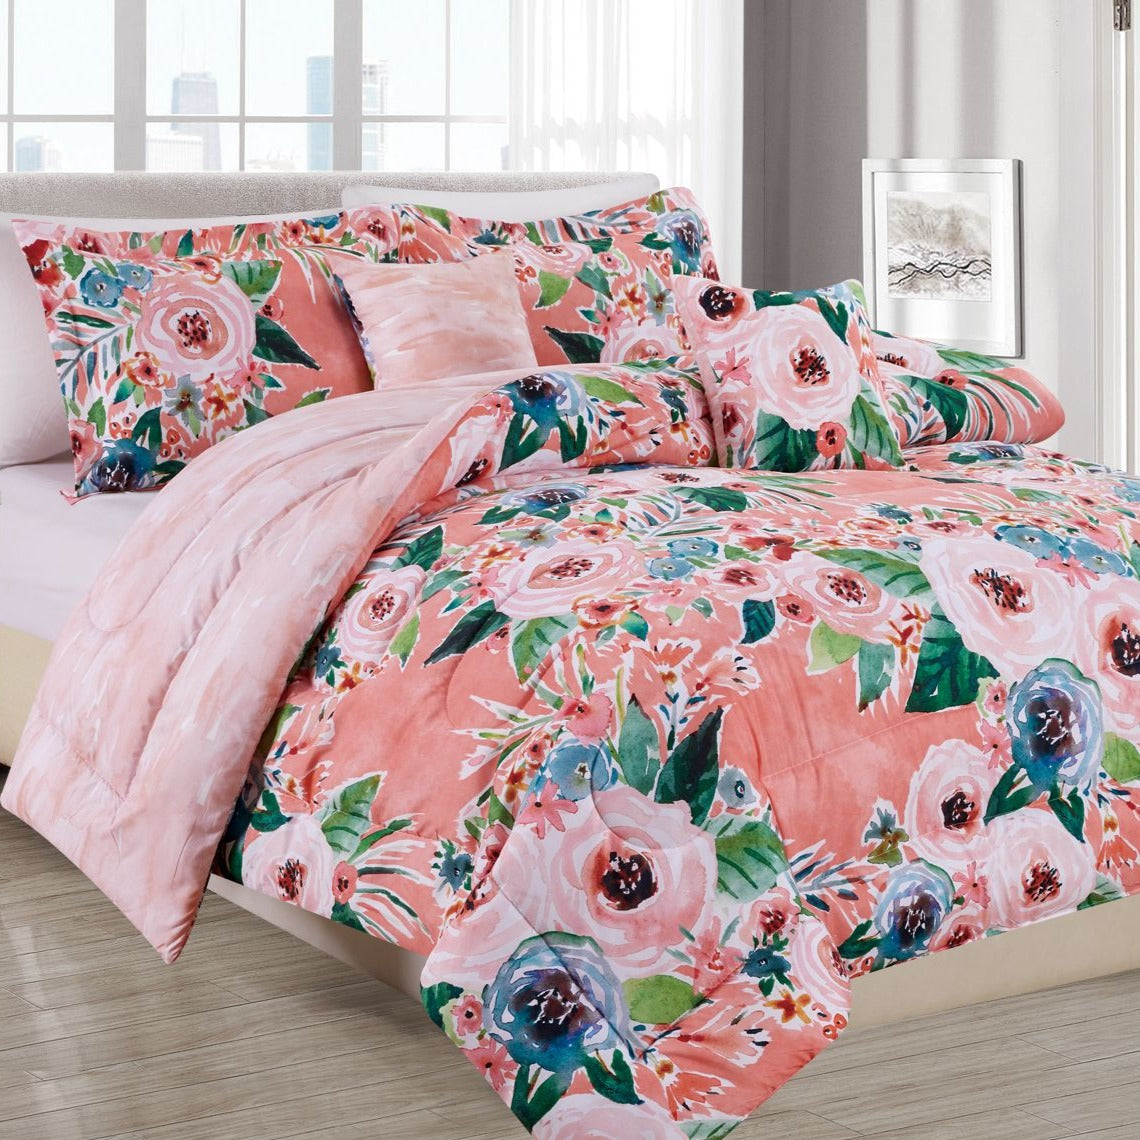 Gone Floral Deluxe Comforter Sets